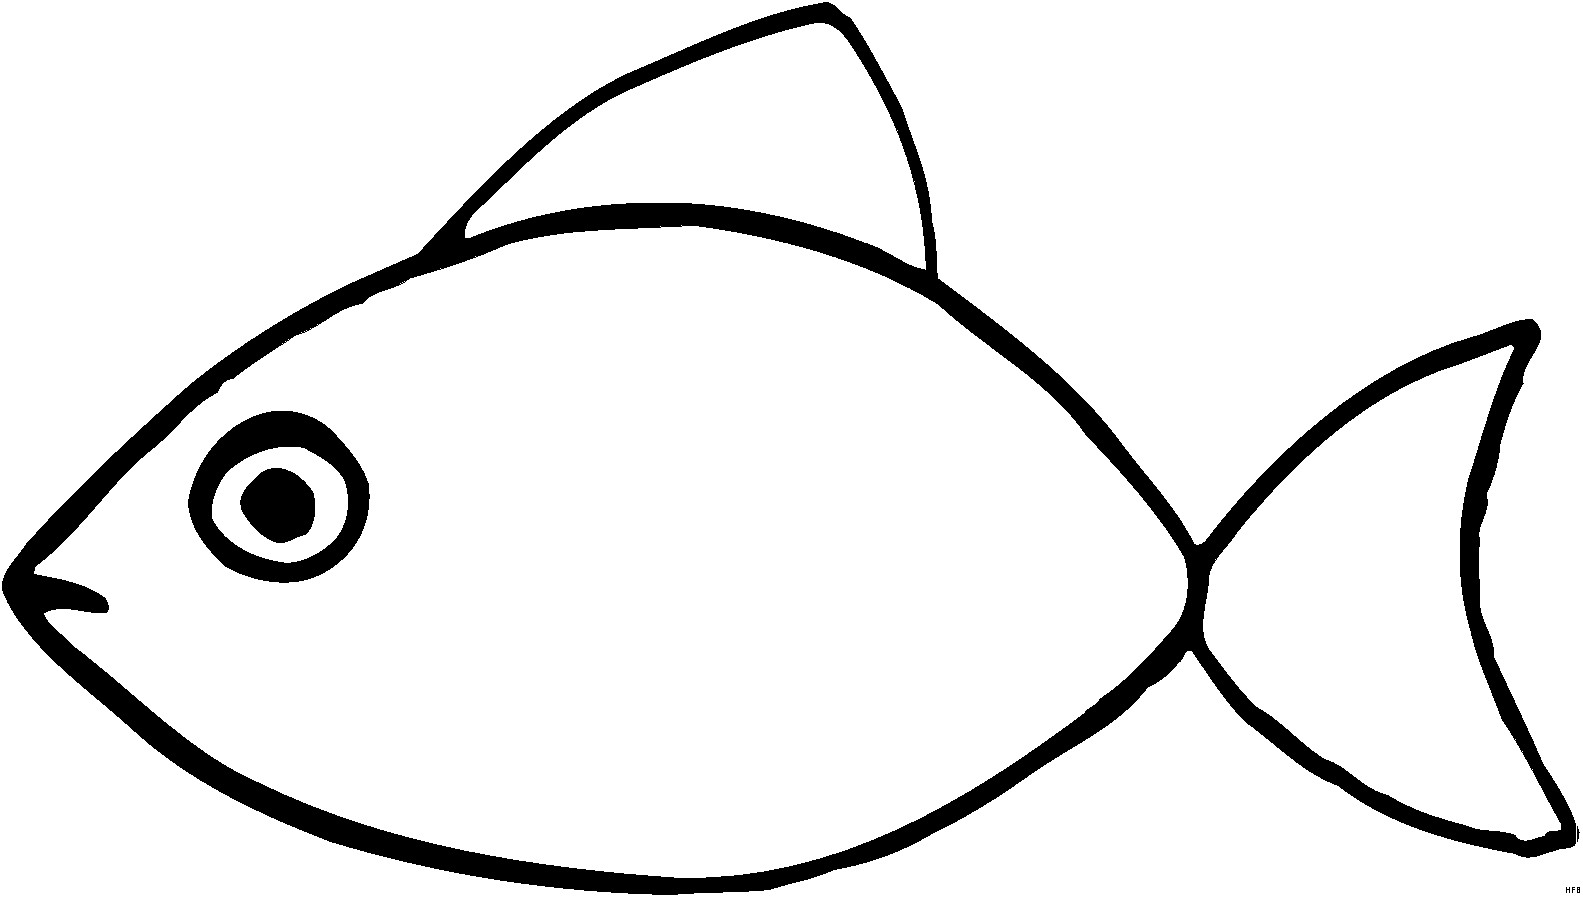 Malvorlagen Einfach
 Skizze Einfach Fisch Ausmalbild & Malvorlage ics